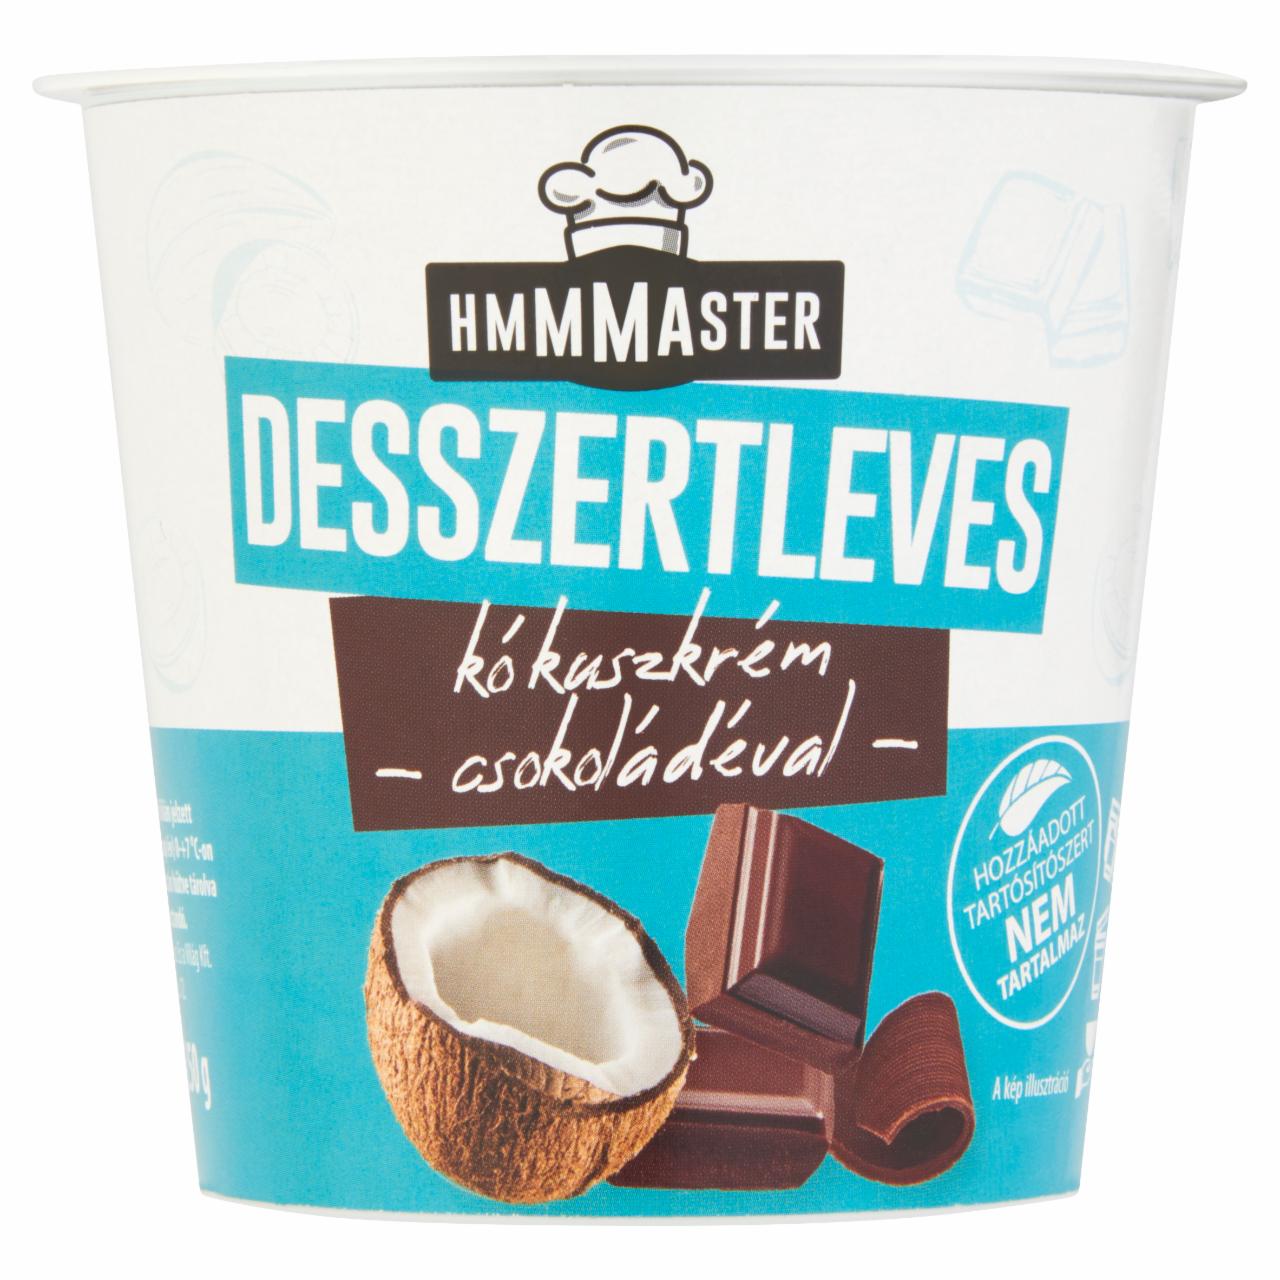 Képek - Hmmmaster kókuszkrém desszertleves csokoládéval 260 ml